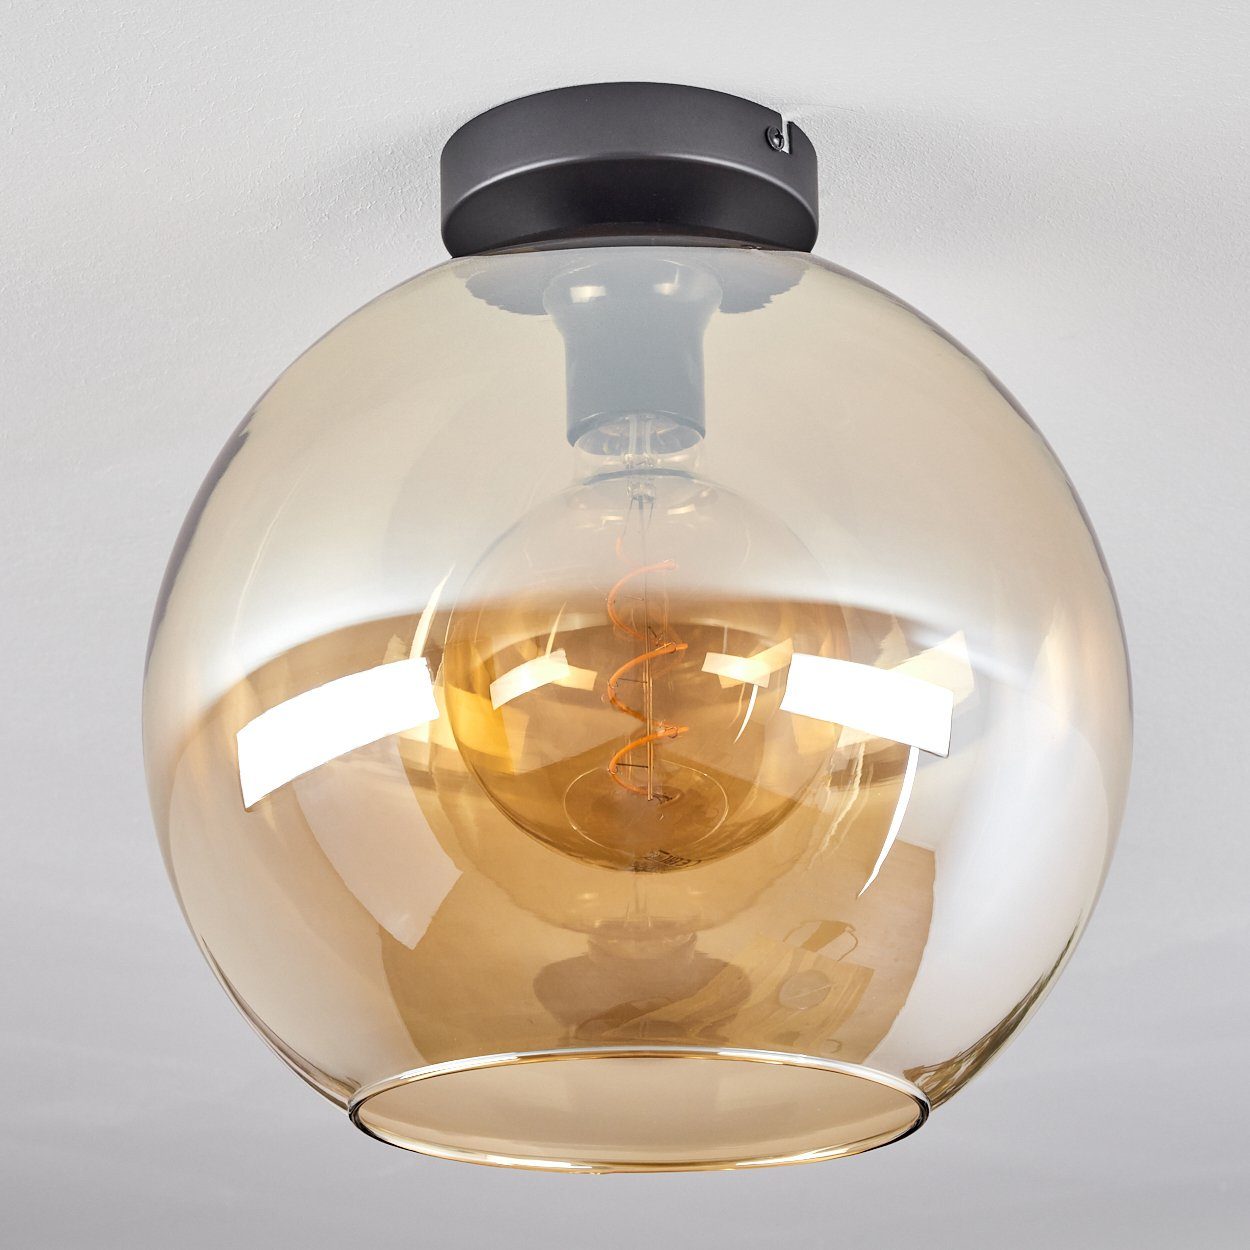 Leuchtmittel, Schirm in mit 1xE27 aus Retro/Vintage-Design Metall/Glas »Cesaro« Deckenlampe im Deckenleuchte hofstein (30cm), aus Glas ohne Leuchte Schwarz/Bernsteinfarben,